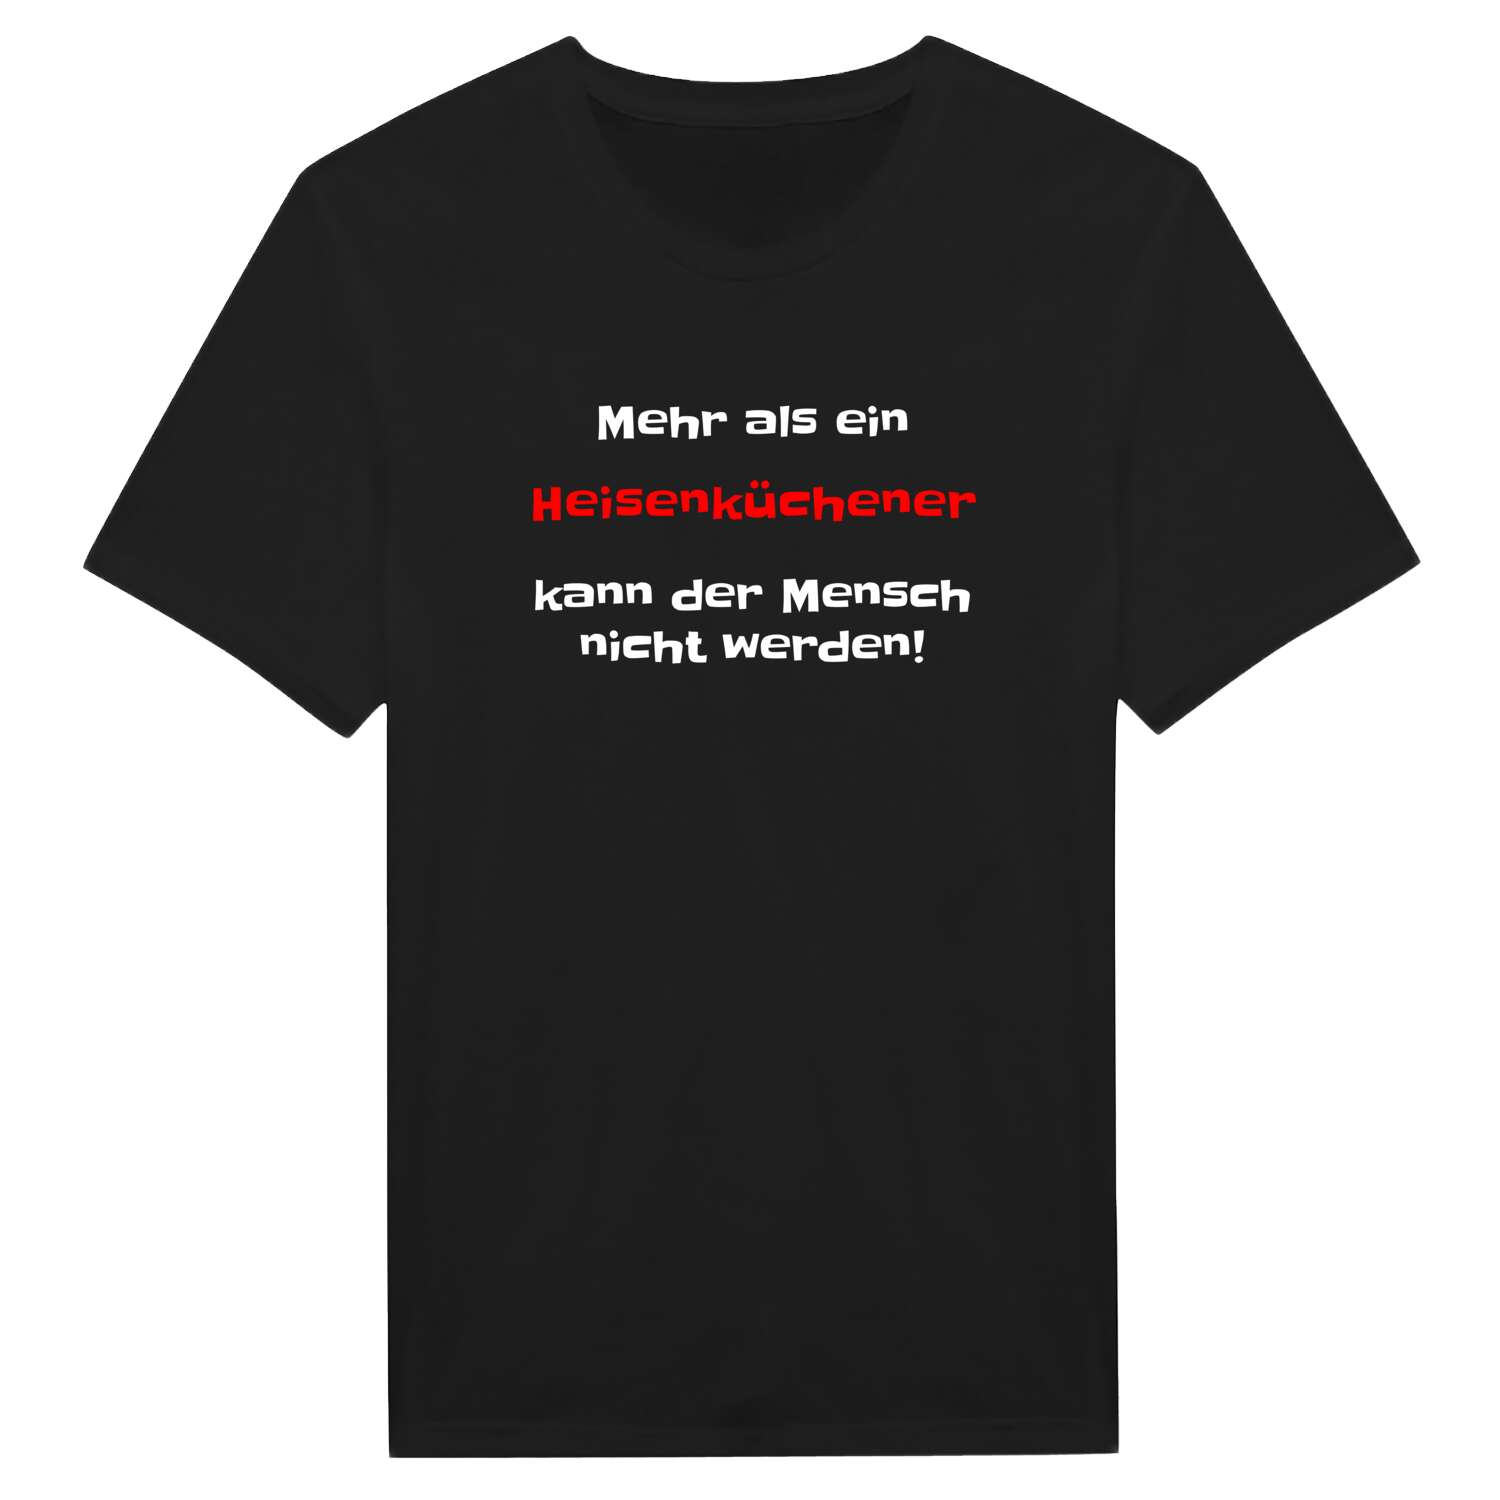 Heisenküche T-Shirt »Mehr als ein«